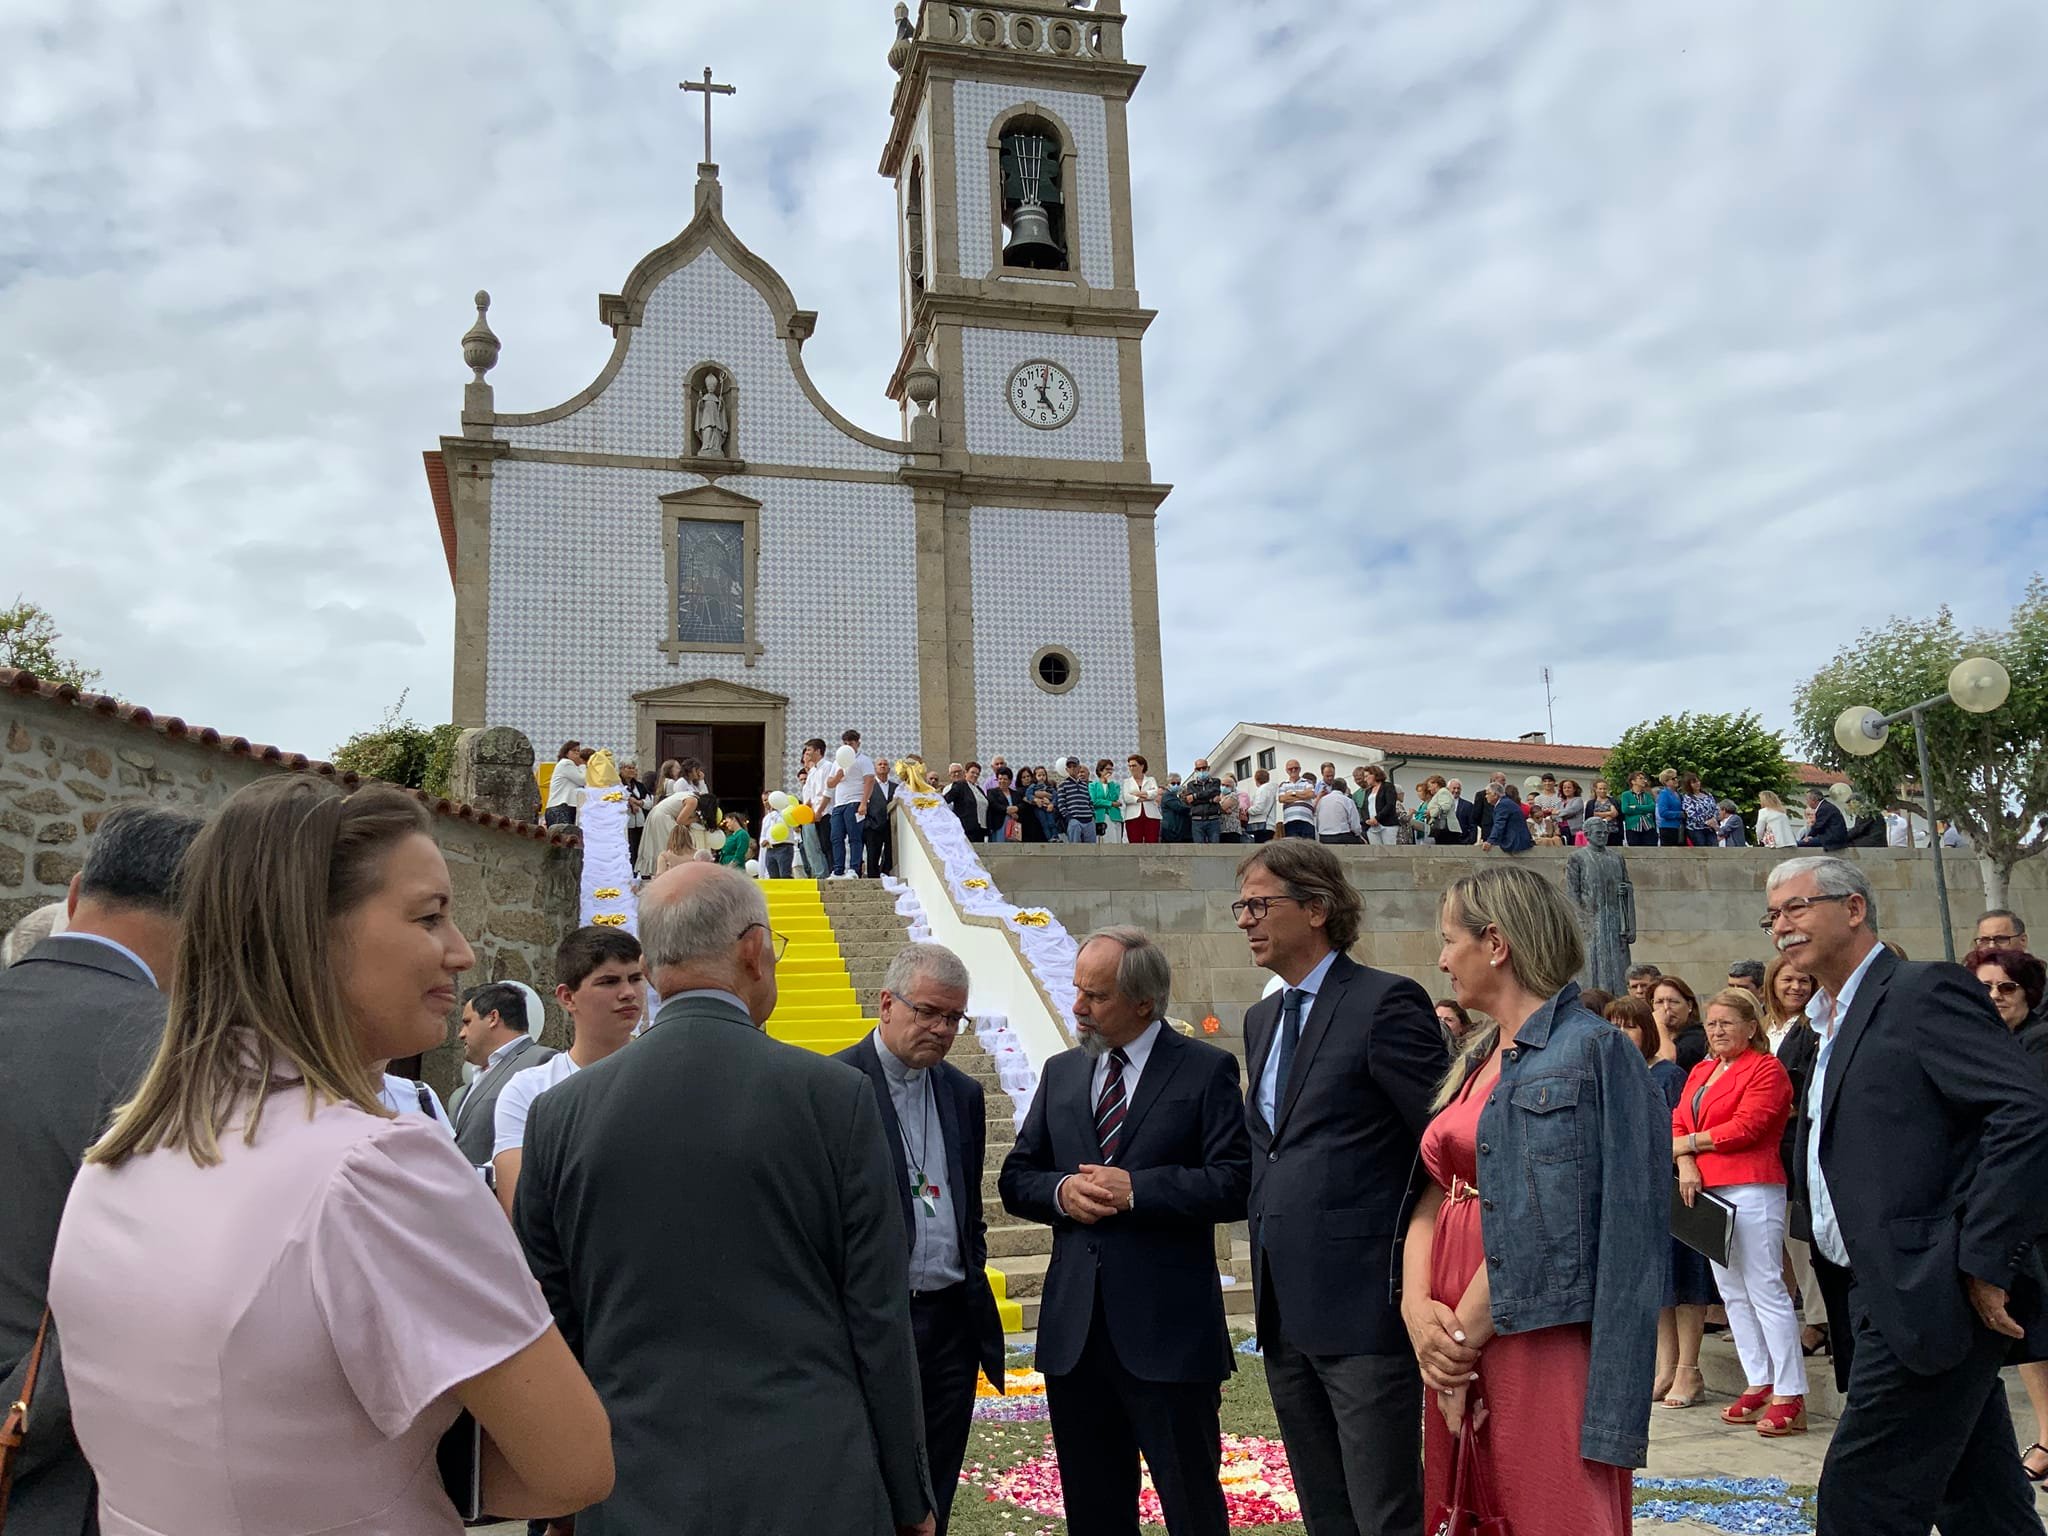 Galegos São Martinho inaugurou obras de restauro e conservação da Igreja Paroquial